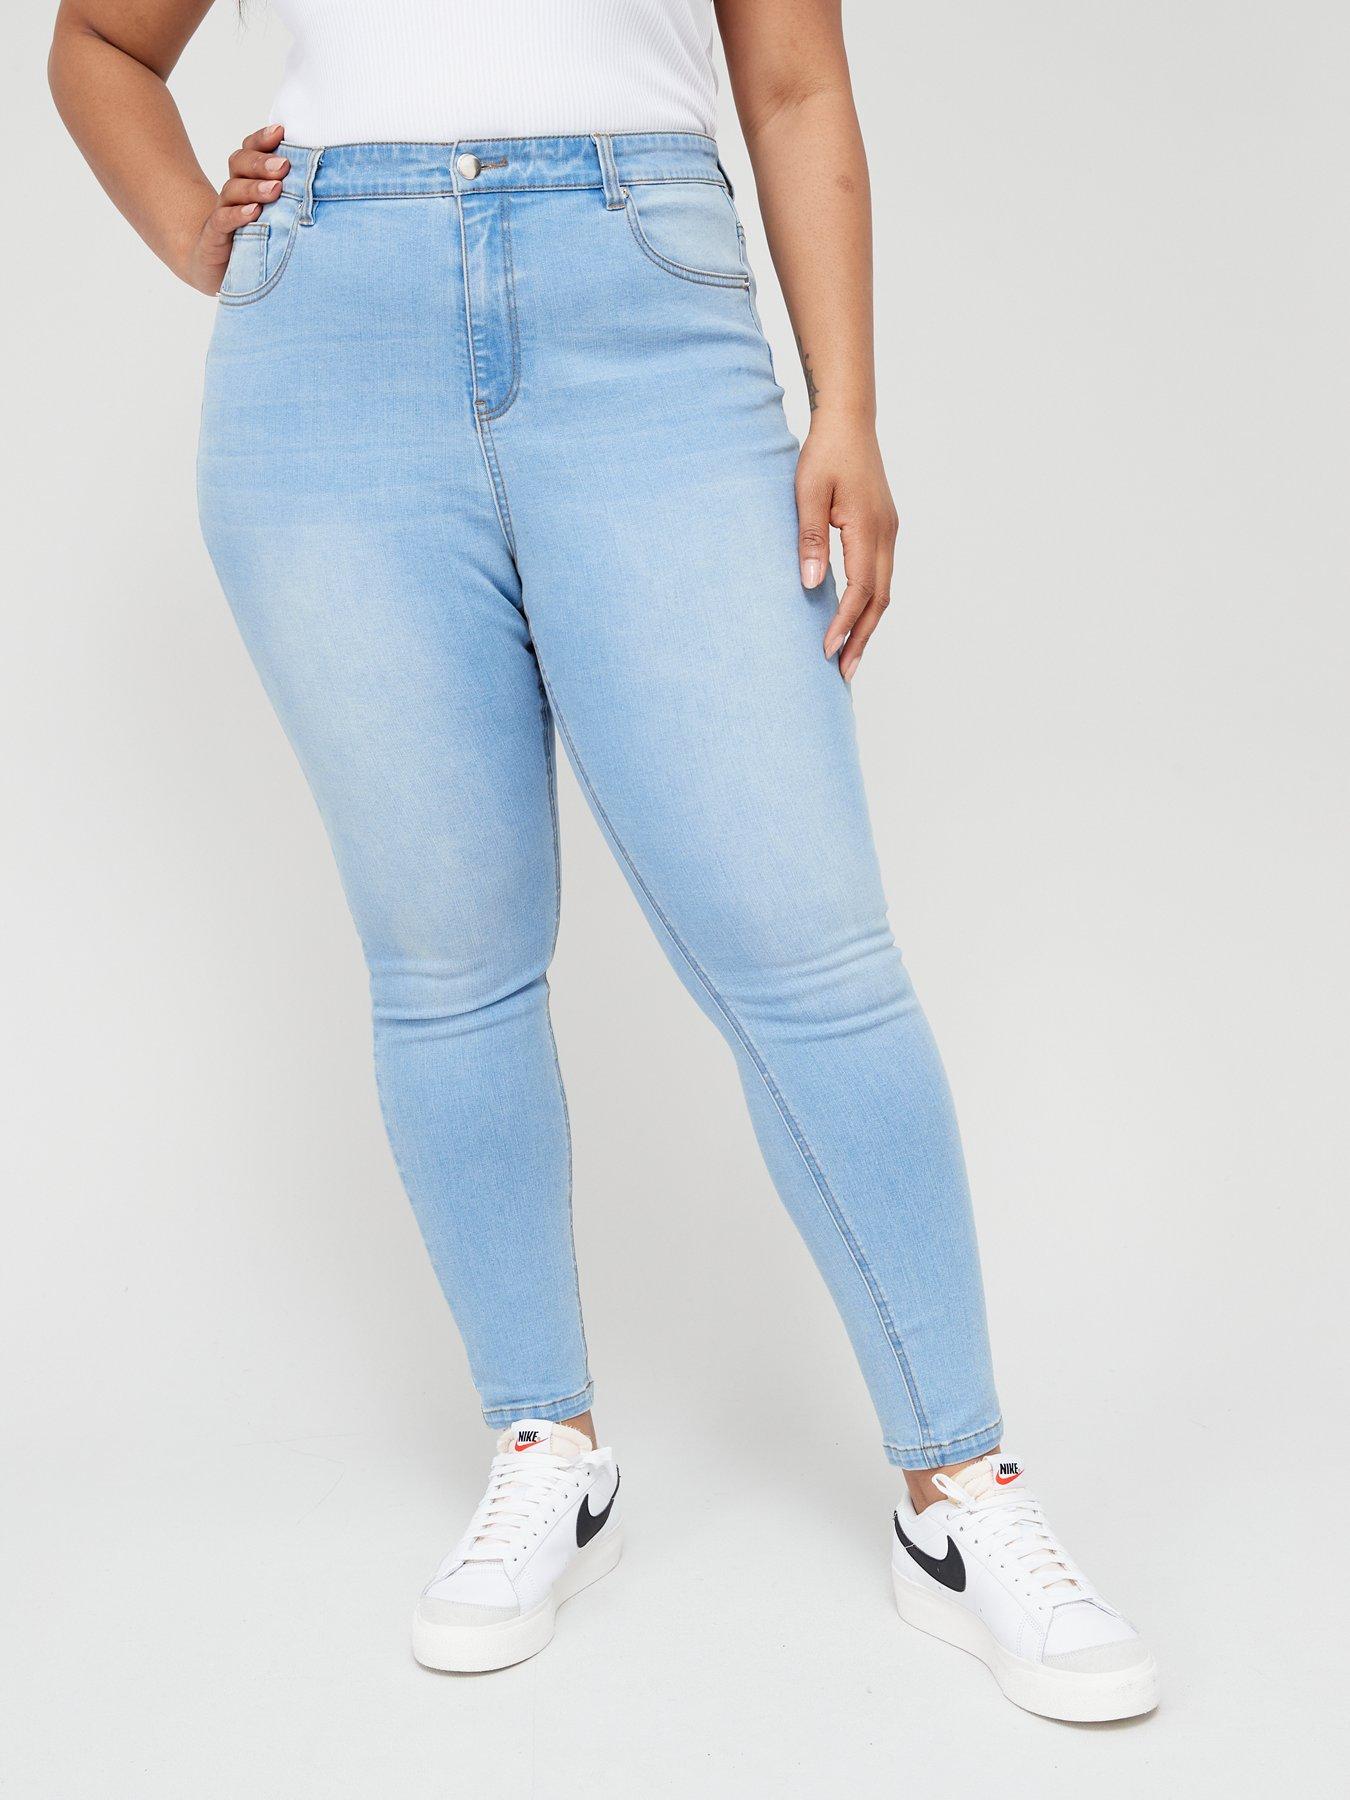 Women's Jeans | Shop Denim Jeans for Ladies UK 